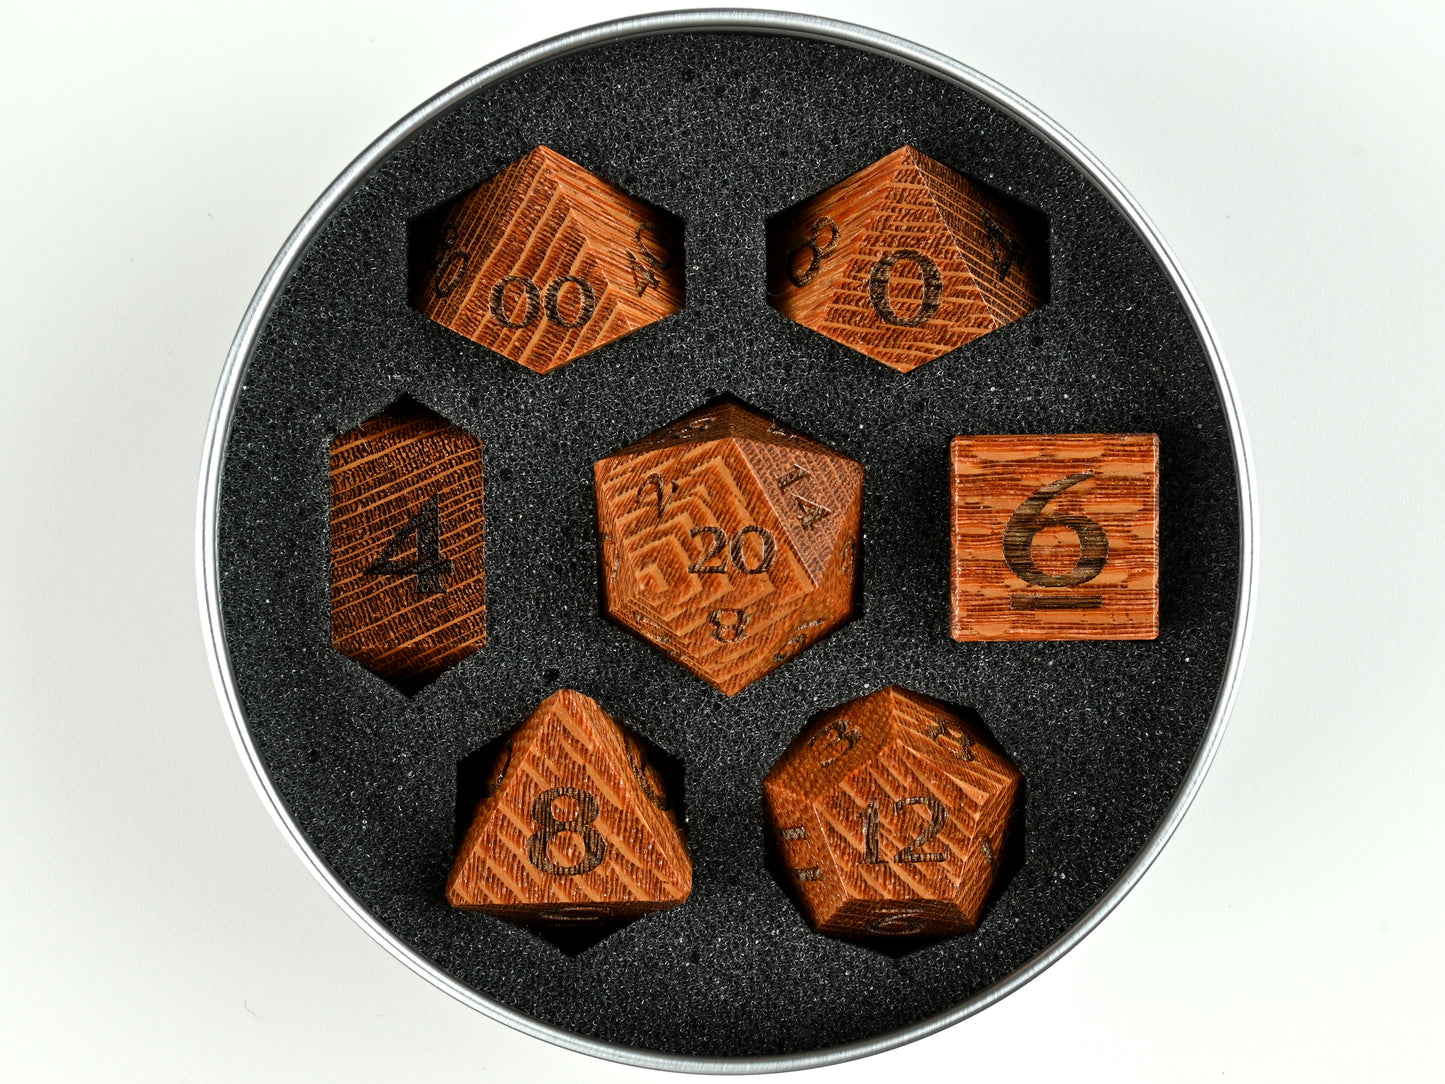 Leopardwood dice set for dnd D&D rpg tabletop gaming